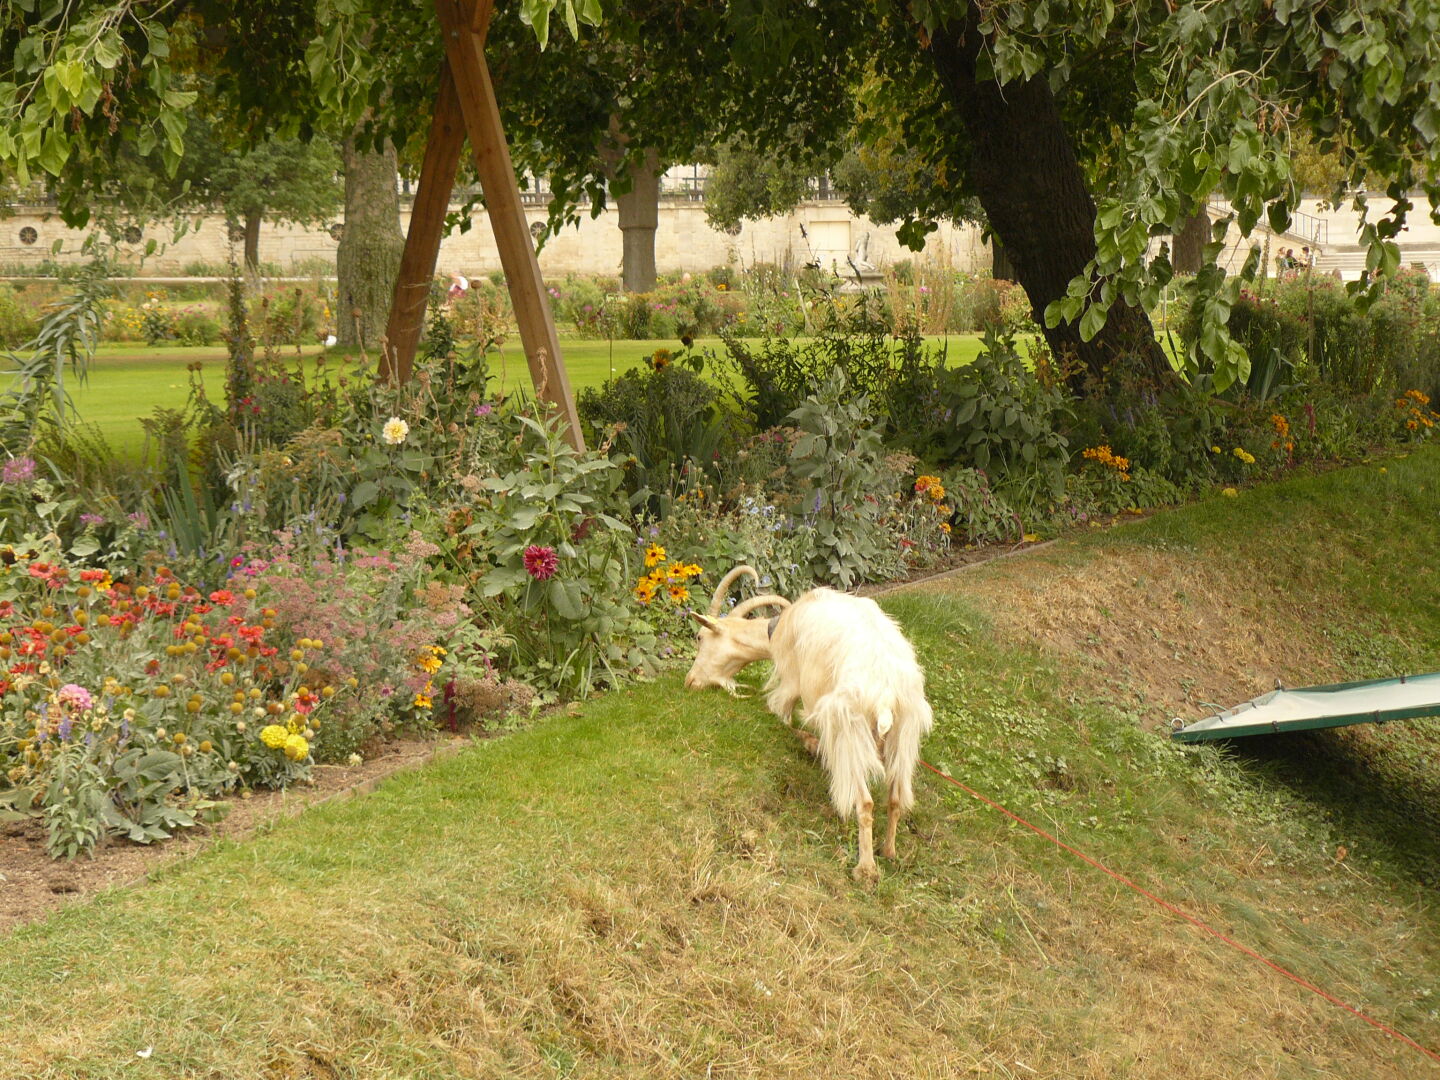 A goat enjoys the lawn in Jardin de Tuileries.